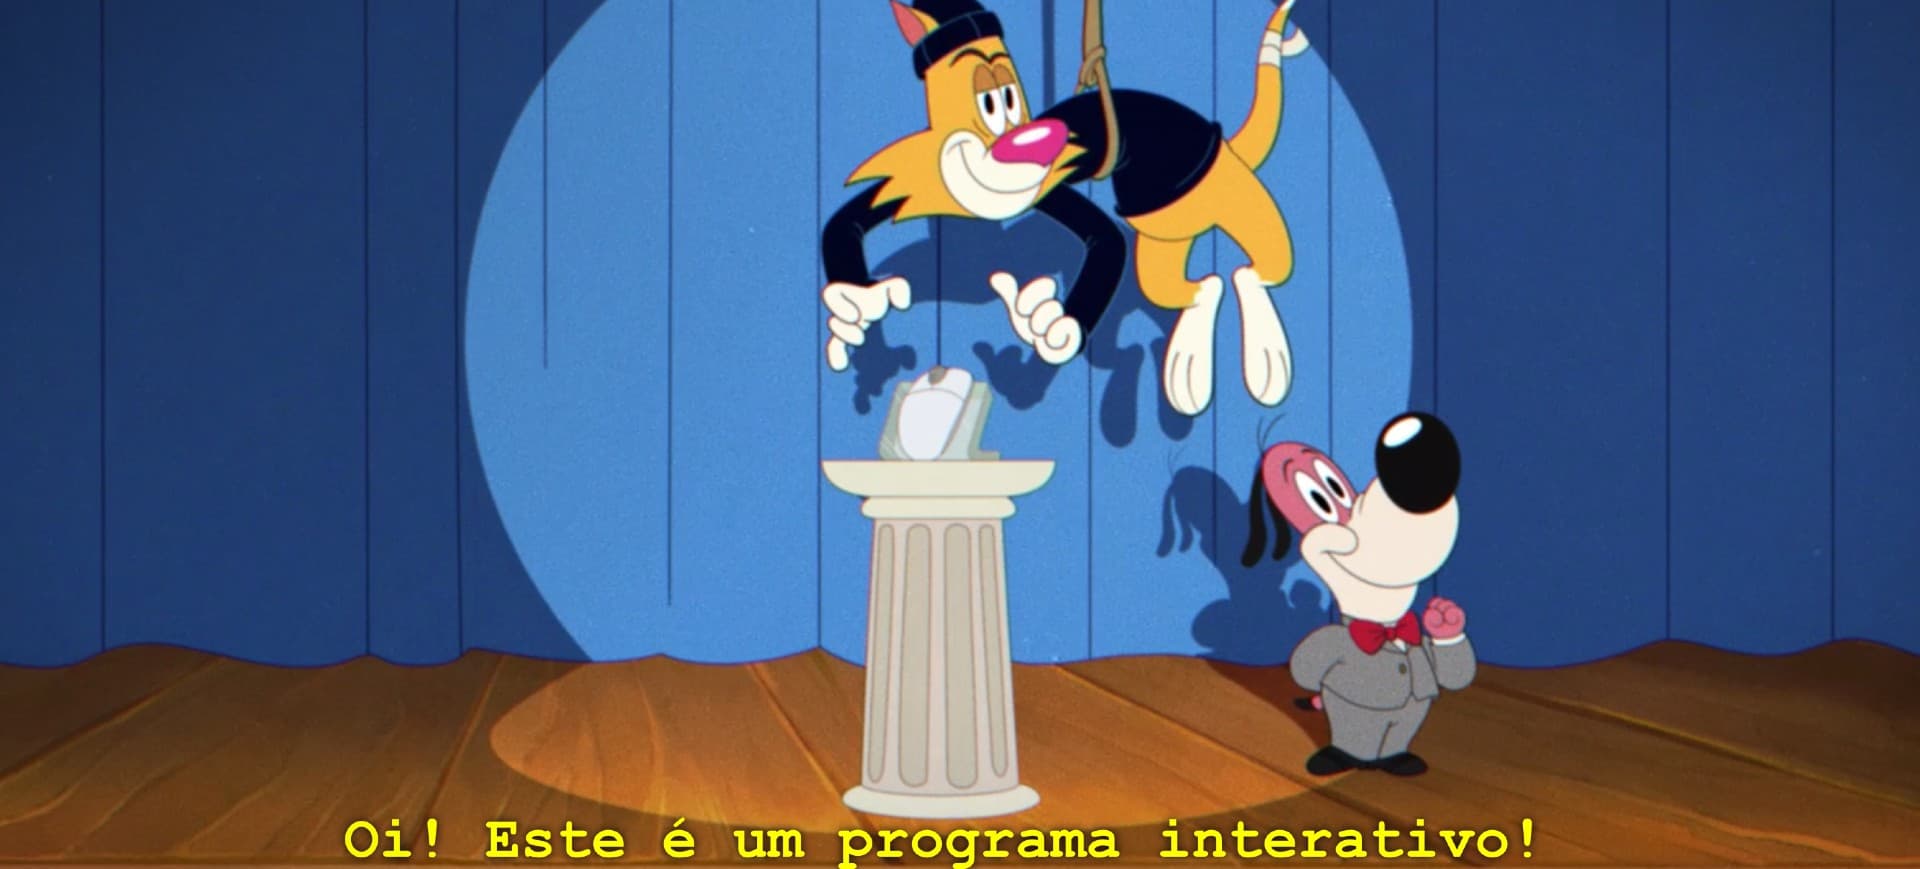 Captura de tela da série interativa da Netflix, Pega Ladrão: a ilustração mostra um gato vestido com uma roupa preta, descendo em uma carda amarrada ao teto e roubando um mouse colocado em um pedestal atrás de um cachorro apresentador